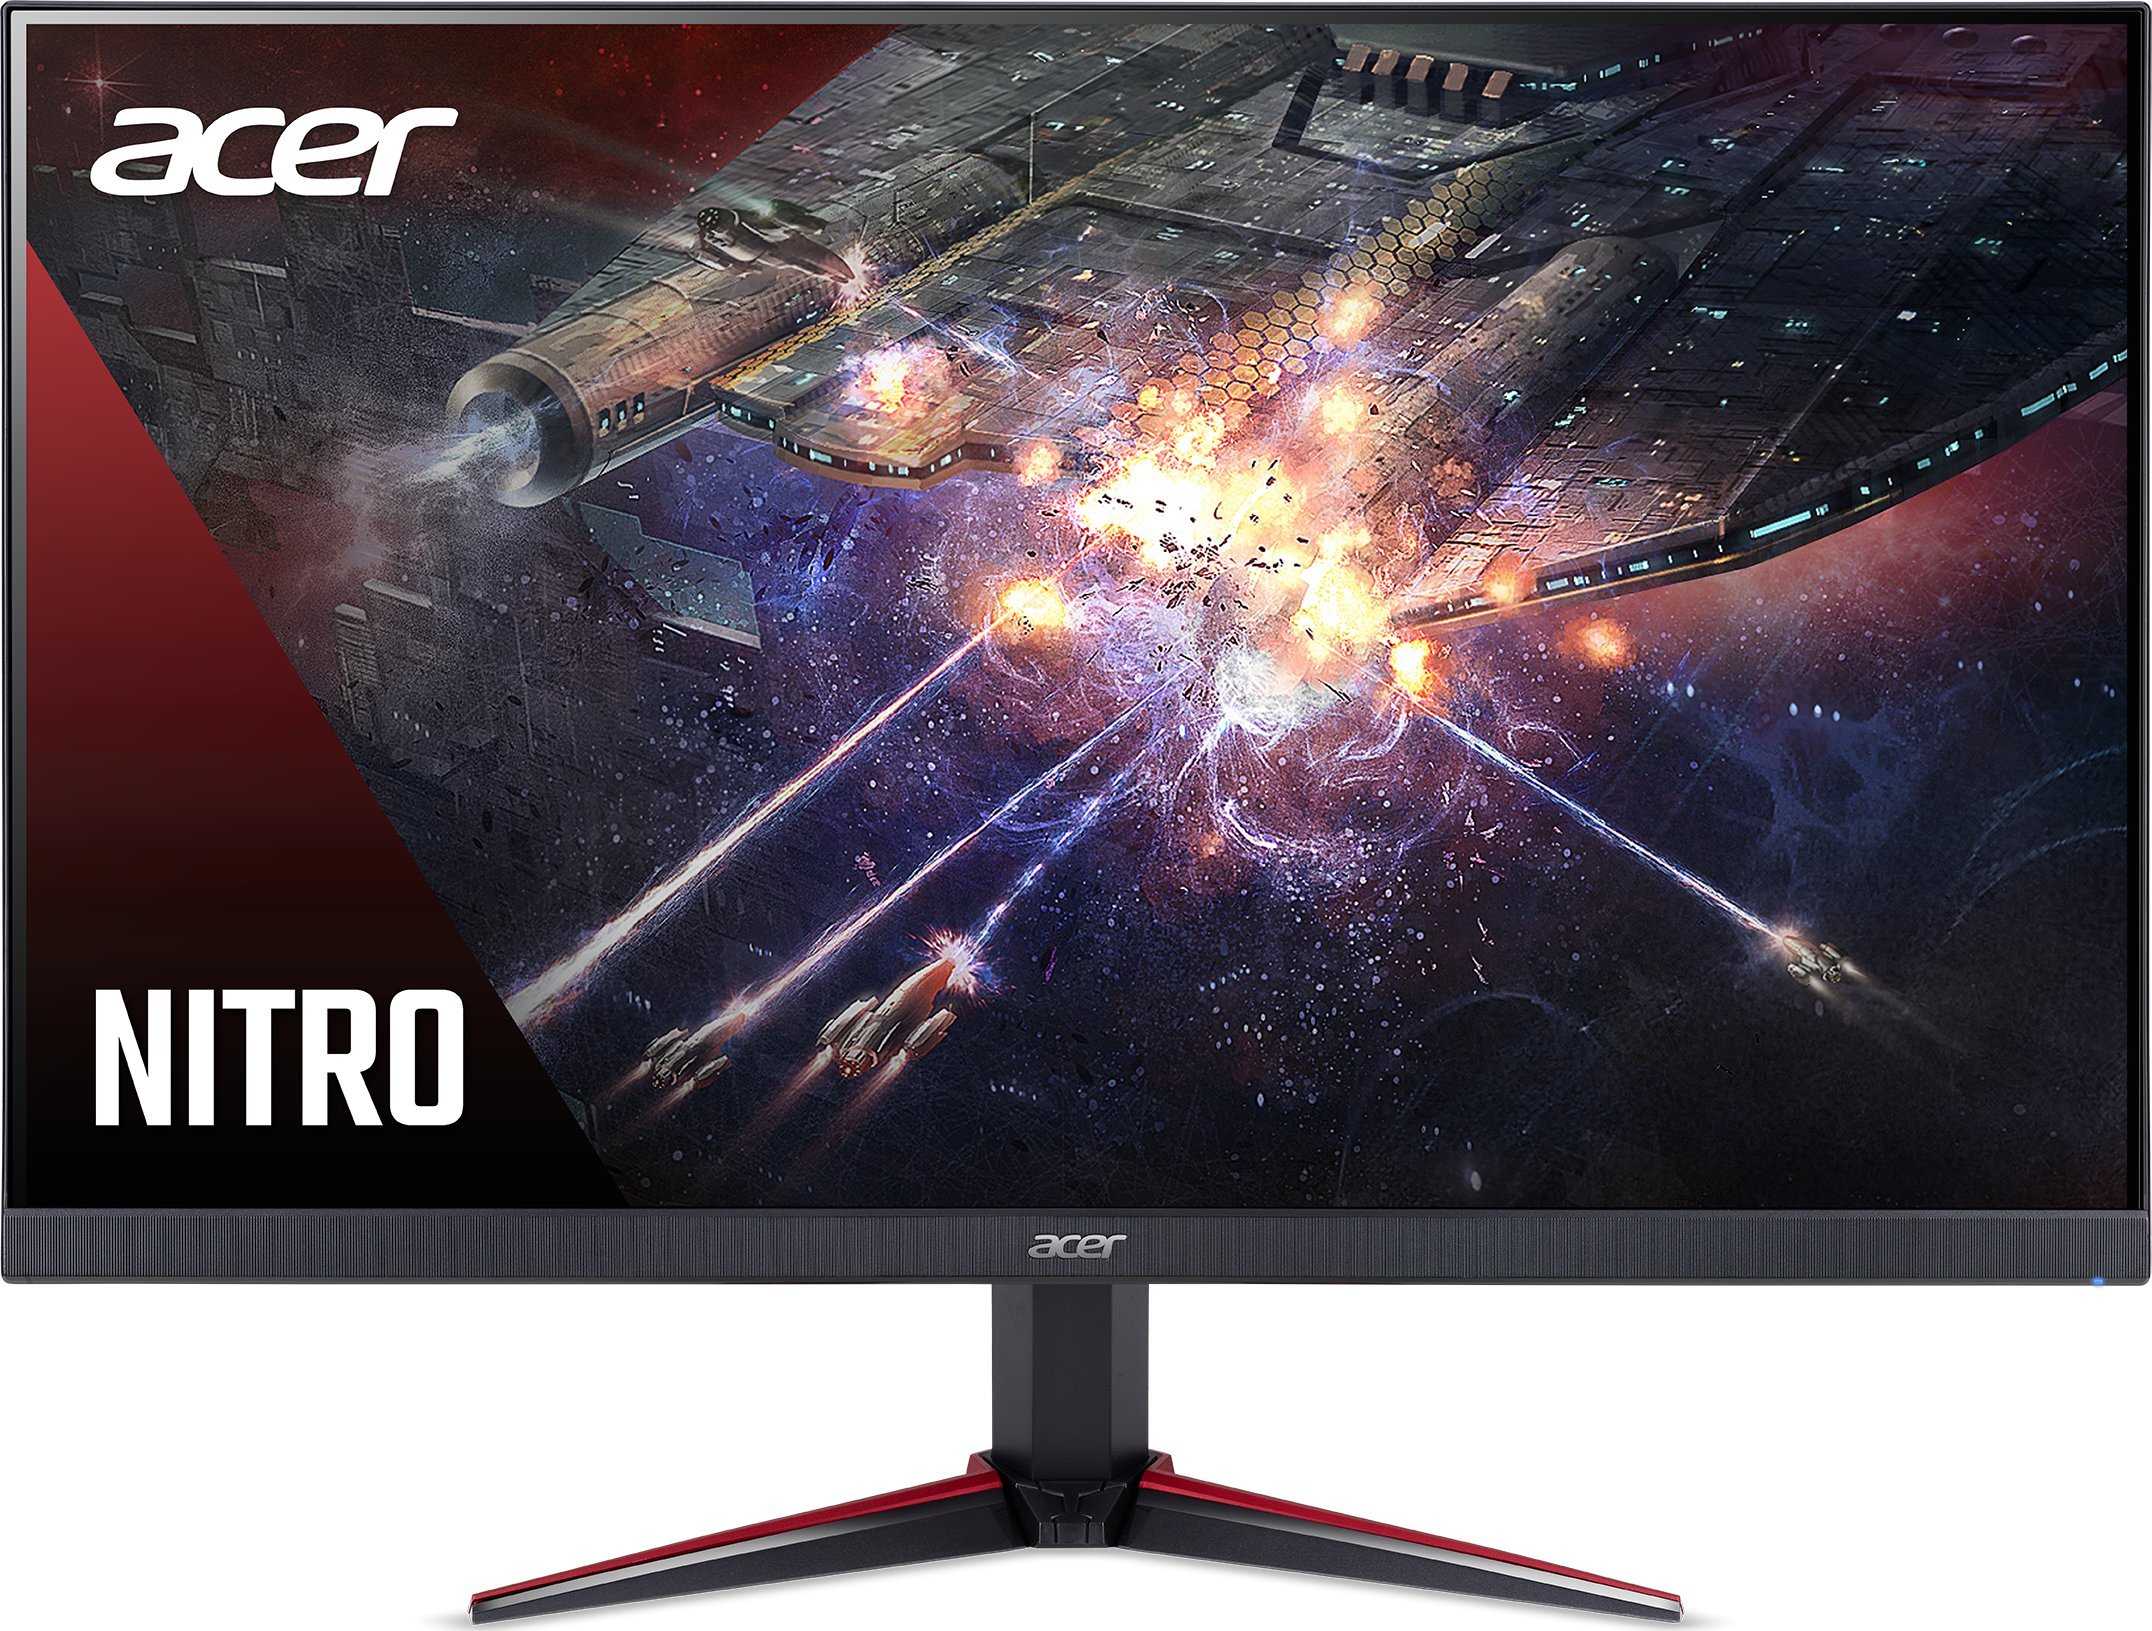 Acer Nitro VG240YS3 monitors